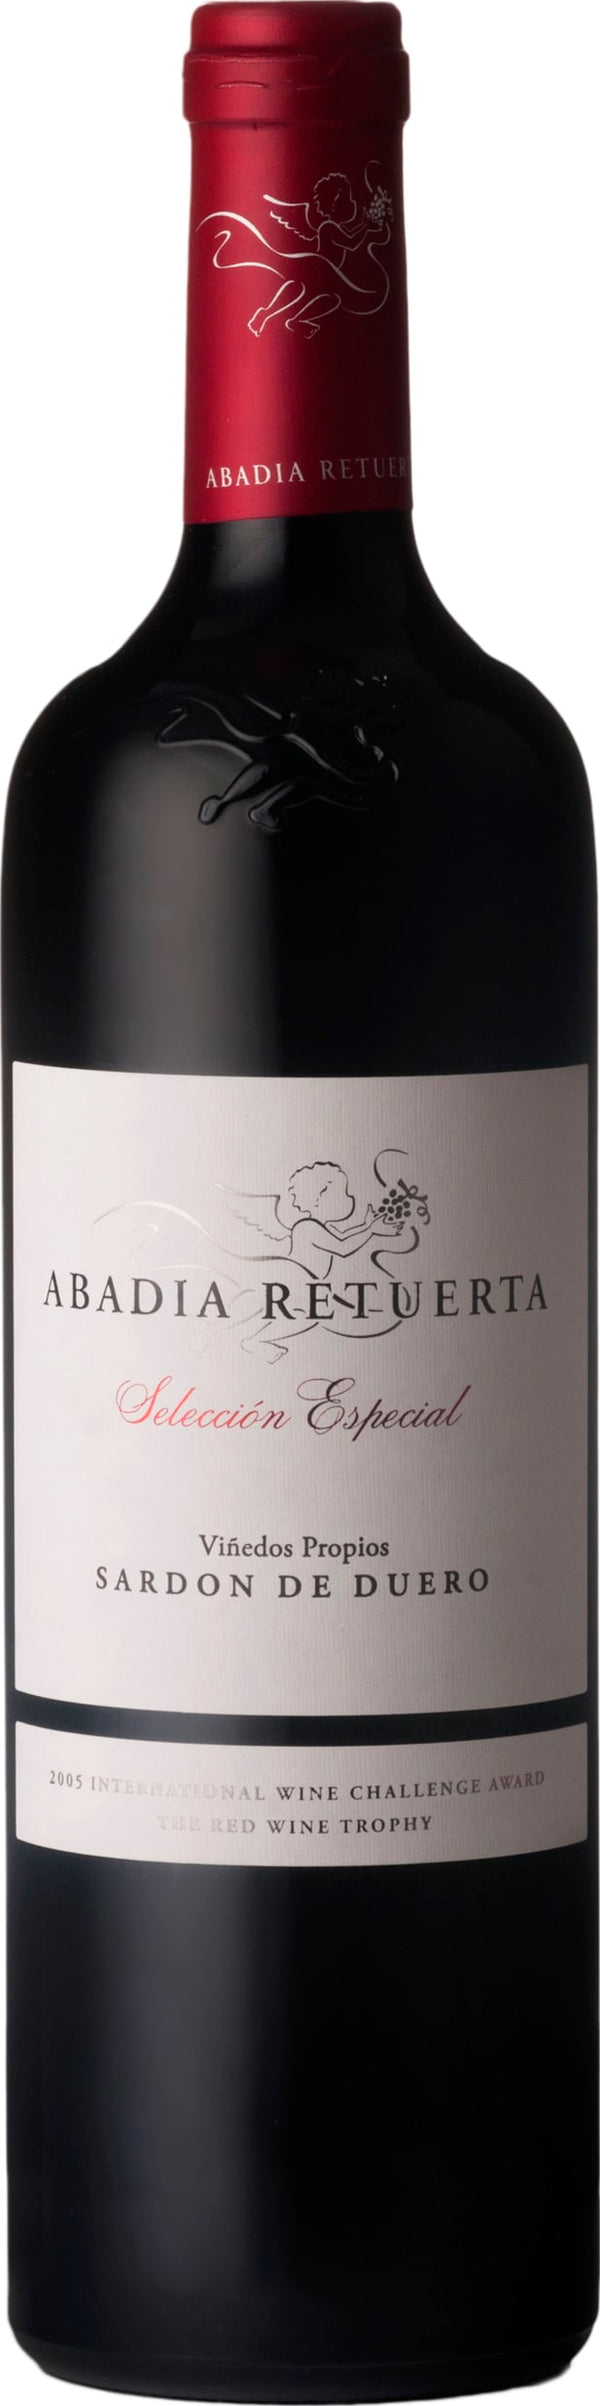 Abadia Retuerta Seleccion Especial 2019 6x75cl - Just Wines 